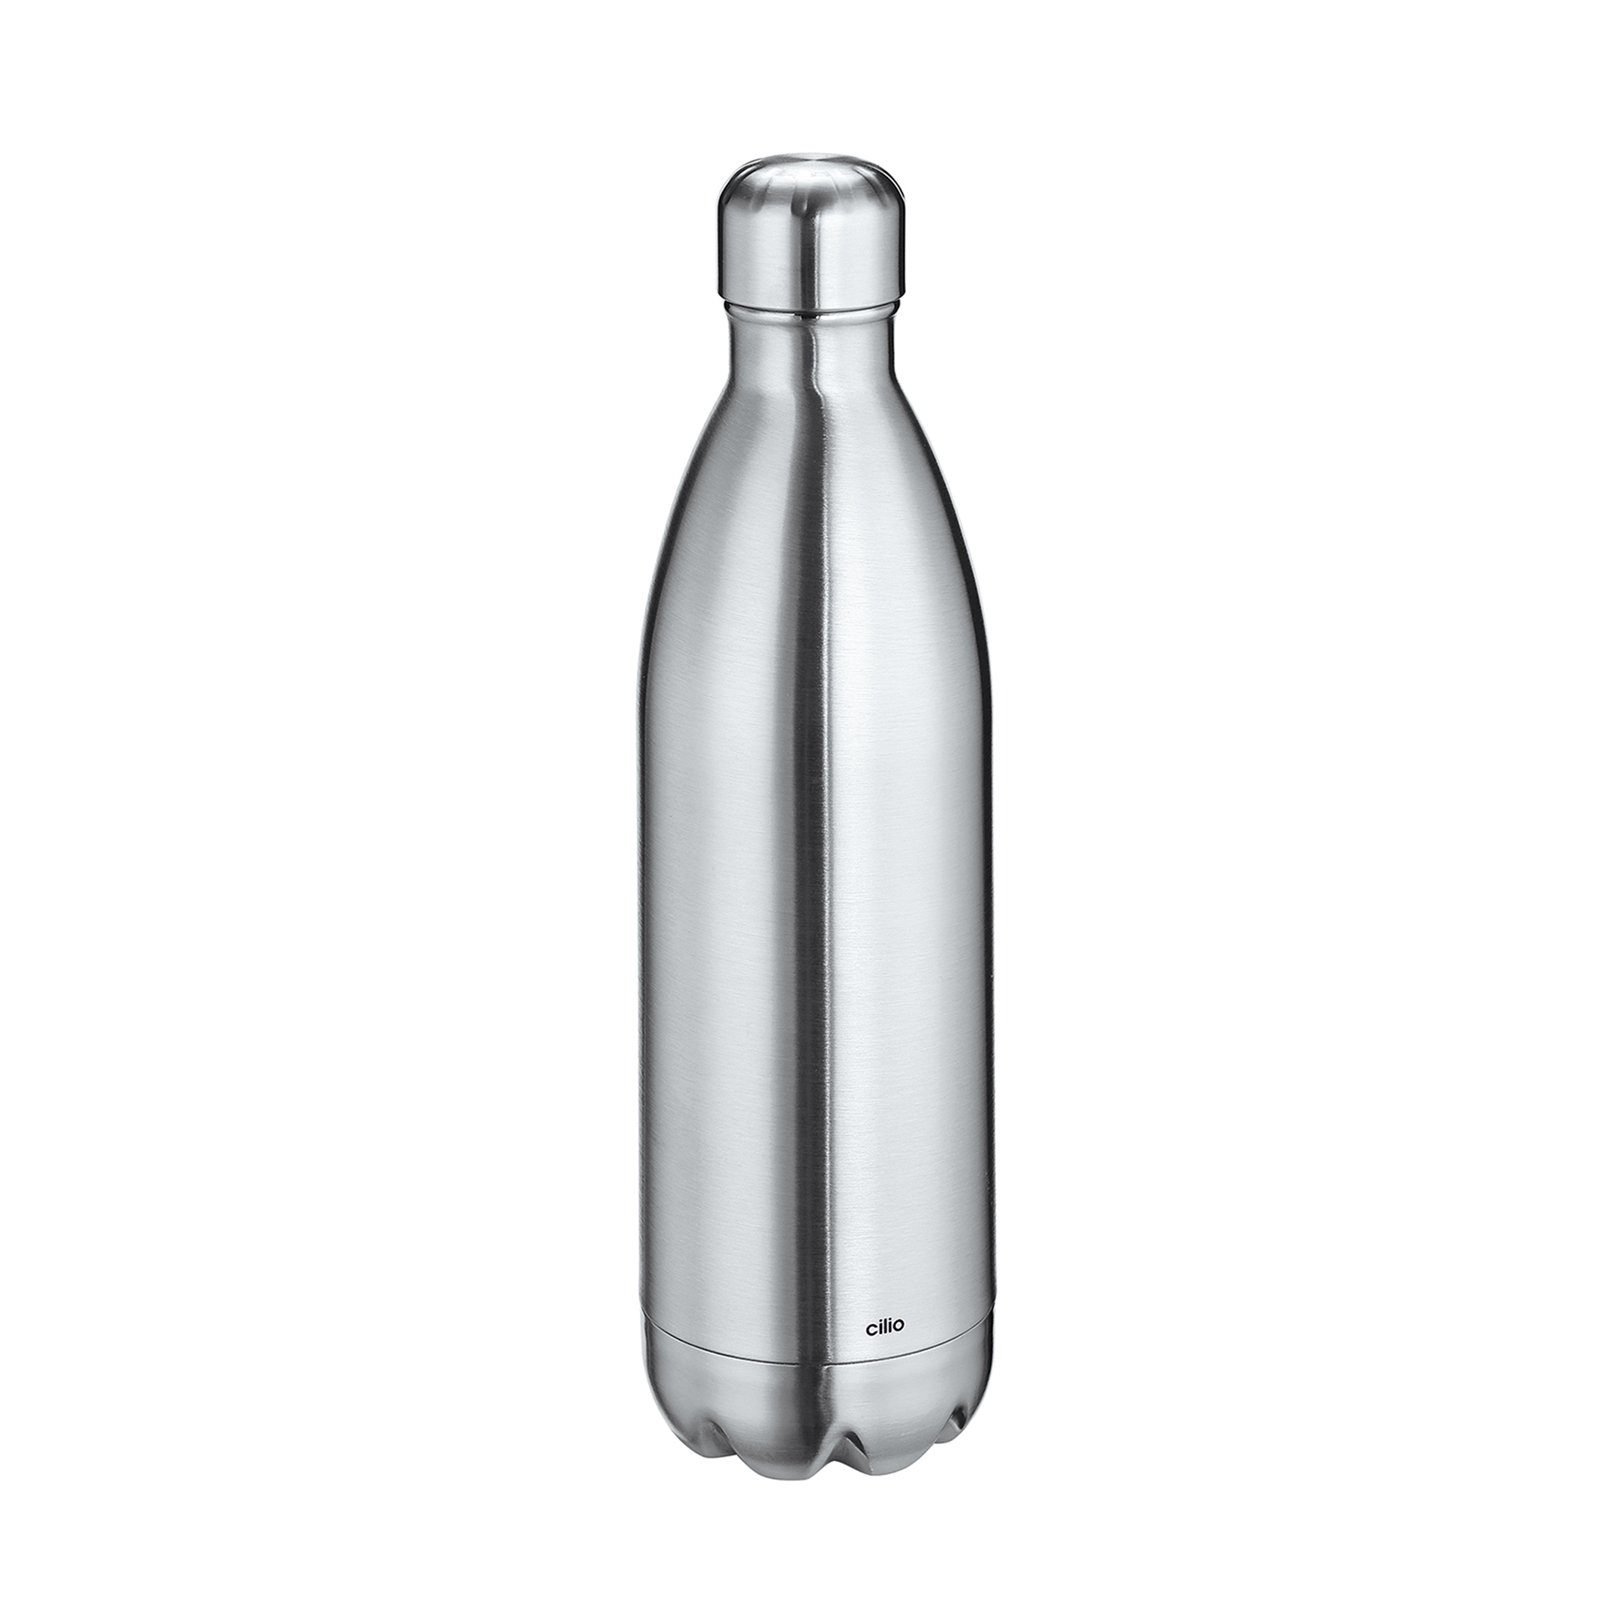 Cilio Isolierflasche Isolierflasche ELEGANTE Silber Liter 1